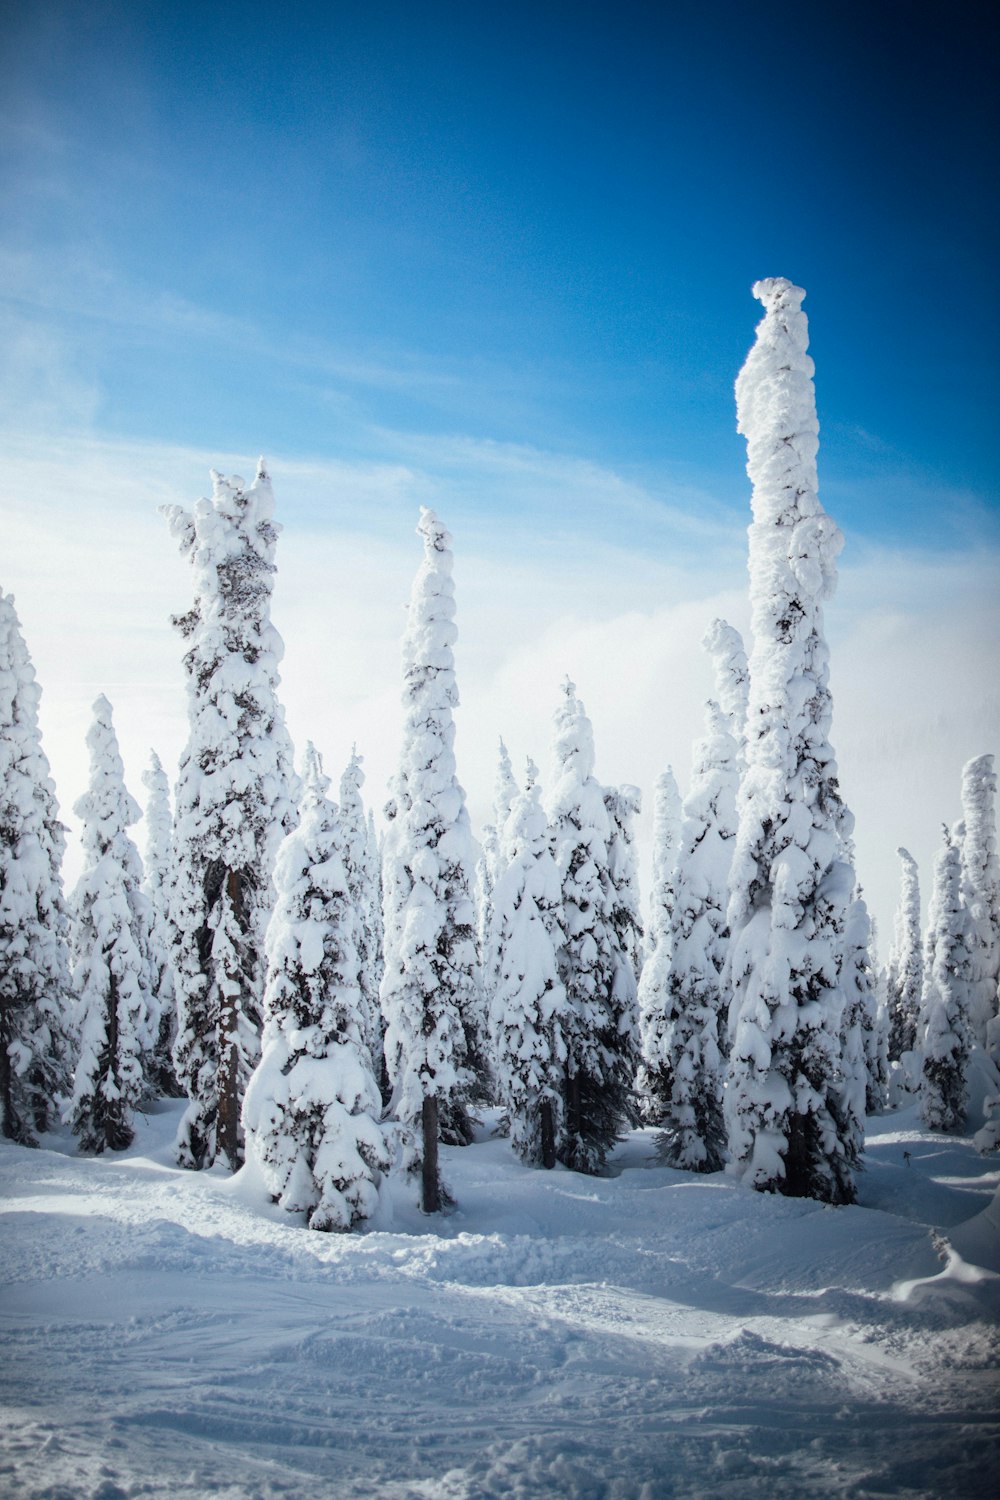 grands arbres couverts de neige pendant la journée